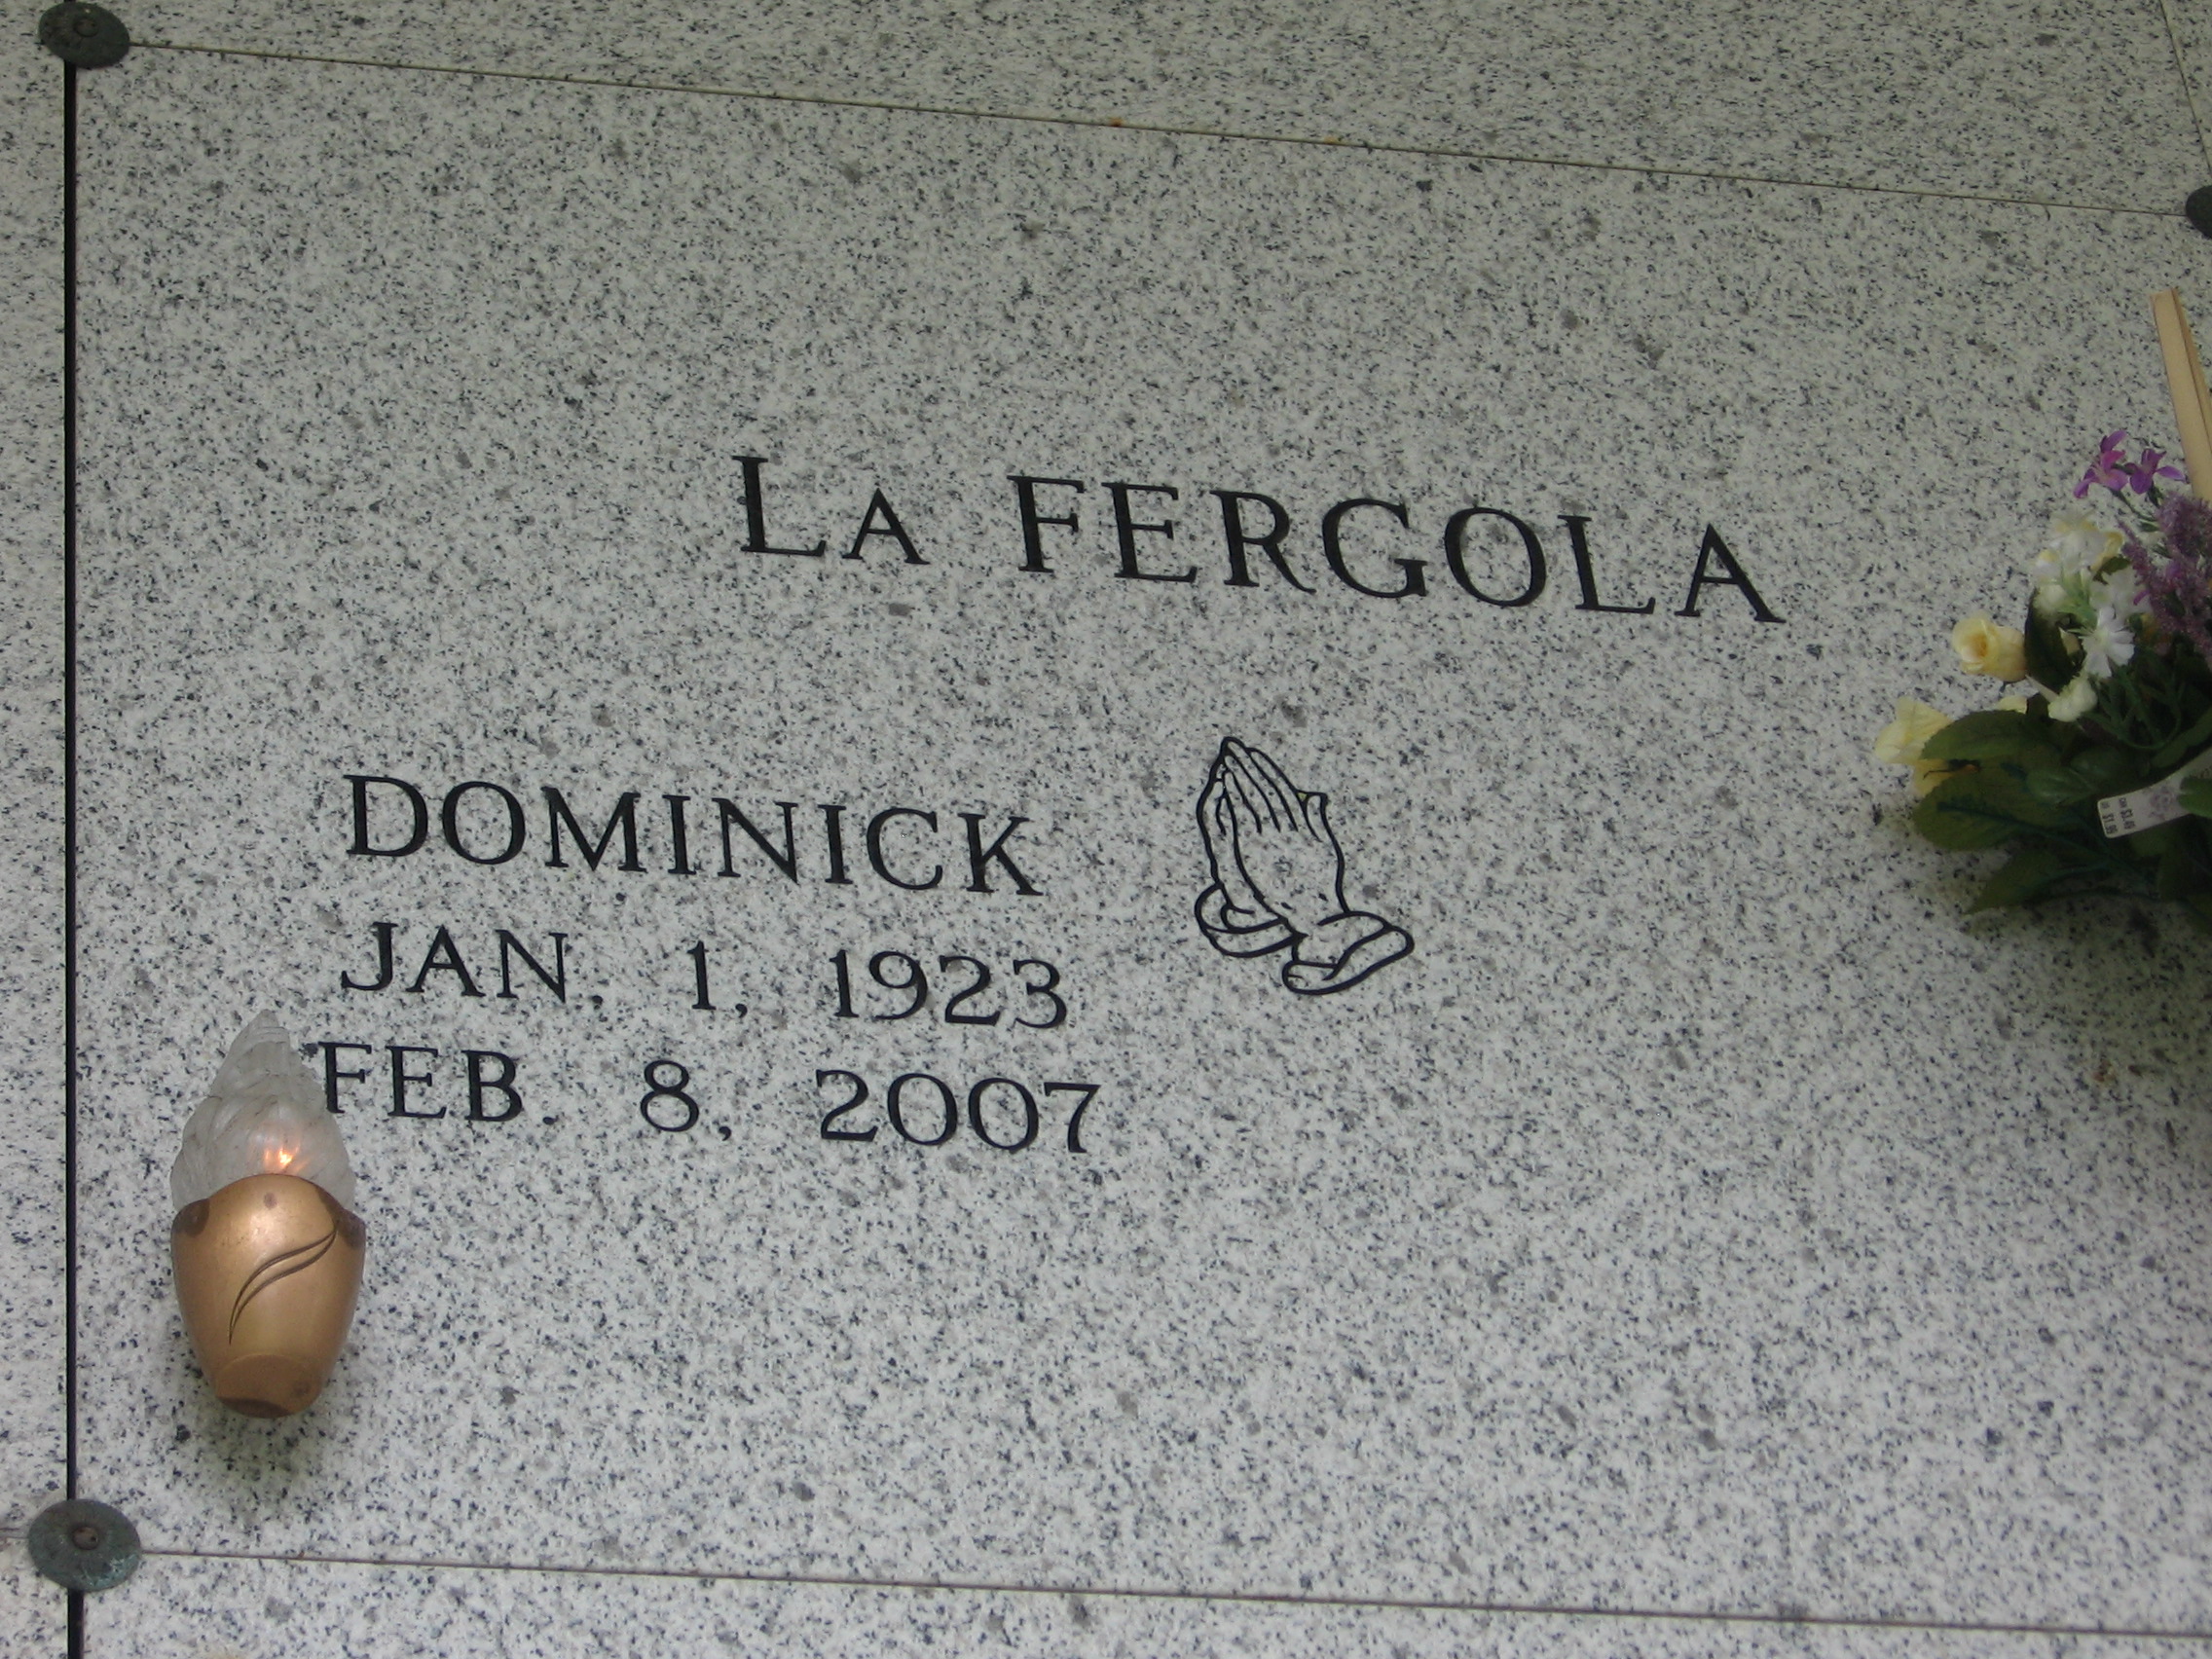 Dominick La Fergola